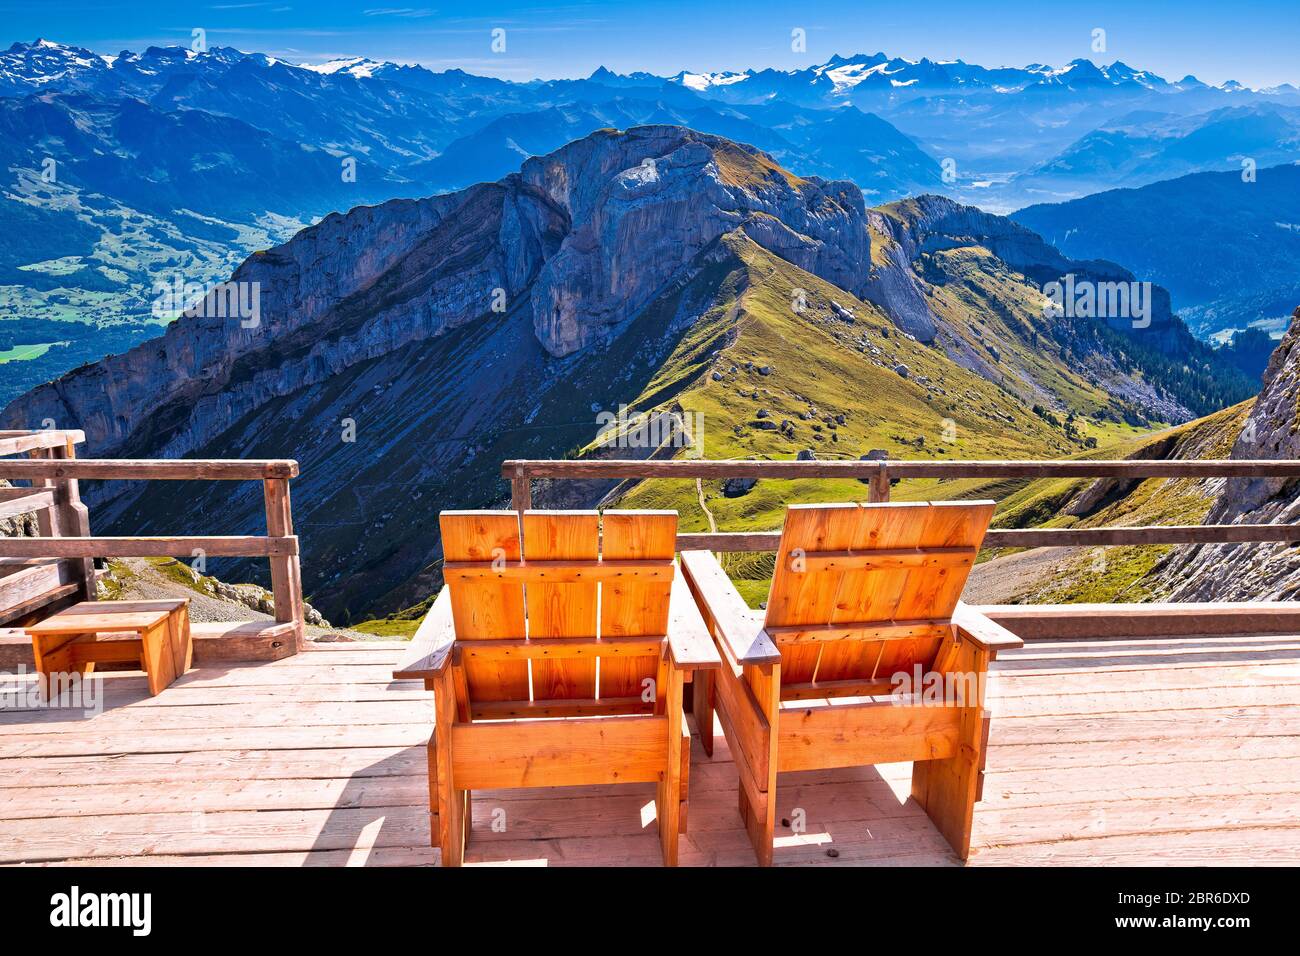 Entspannen Liegestuhl Schweizer Alpen Panorama, Pilatus Berg Reiseziel,  Landschaft der Schweiz Stockfotografie - Alamy